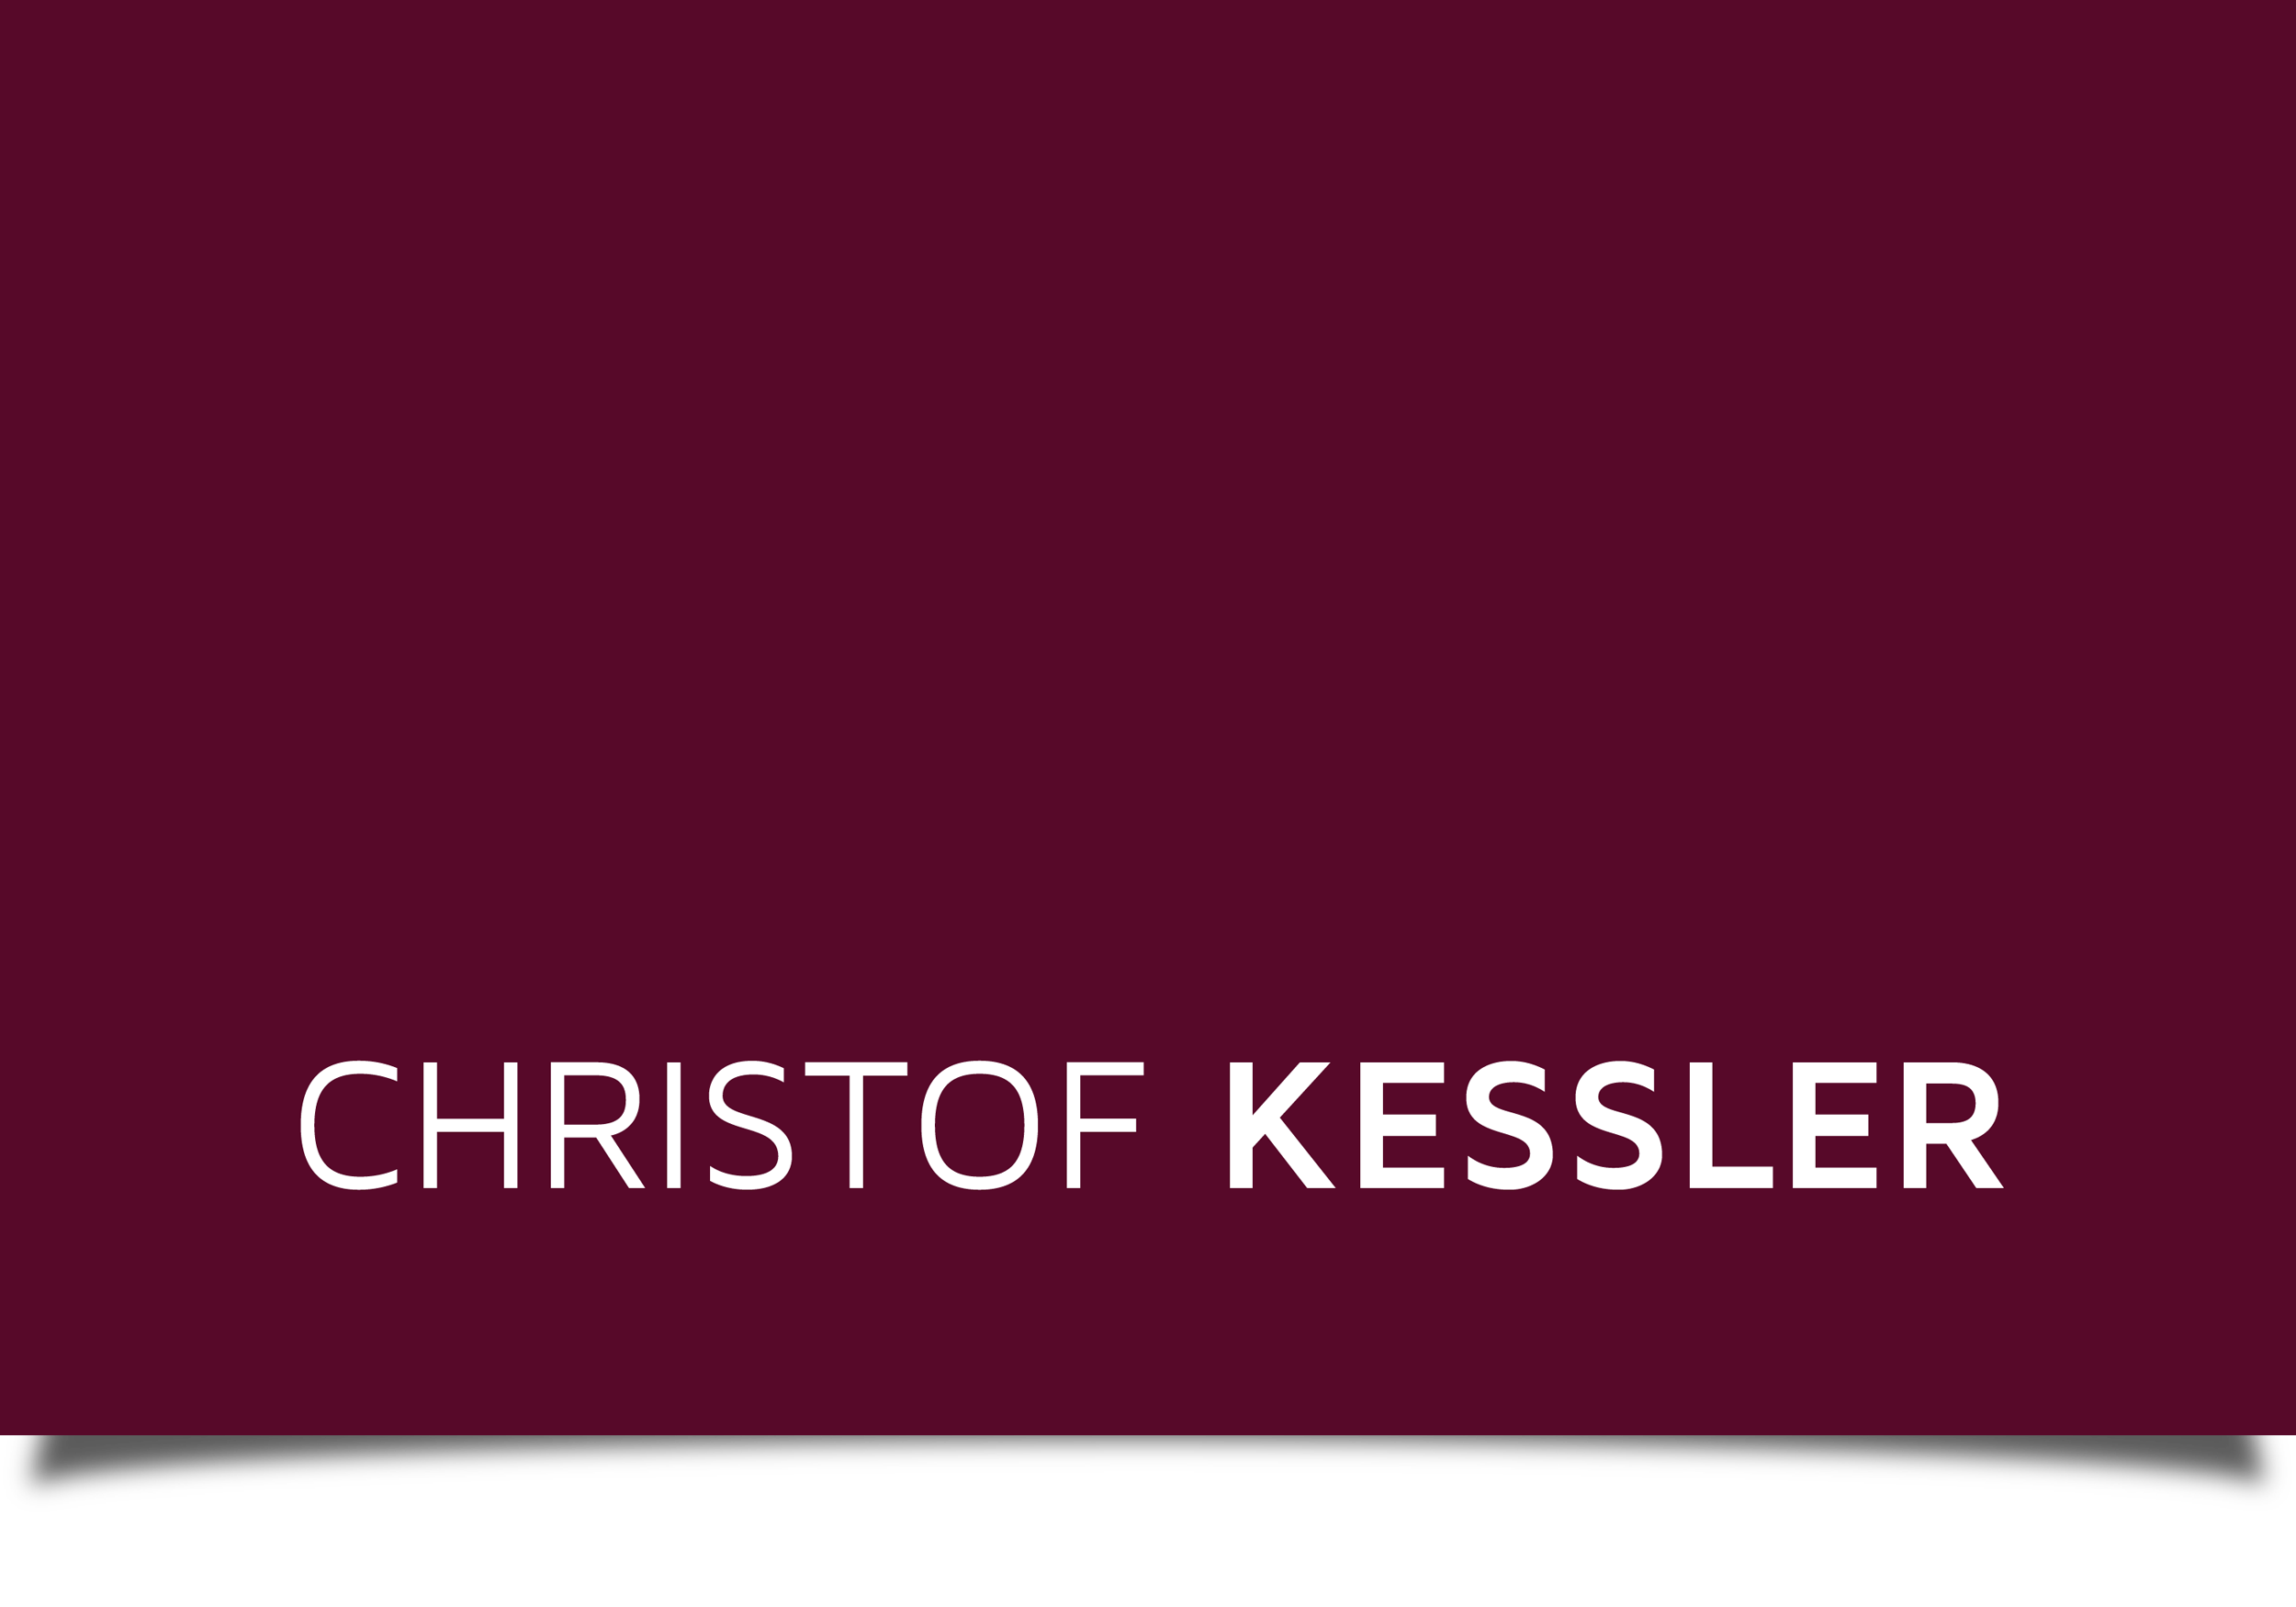 Professor Christof Kessler